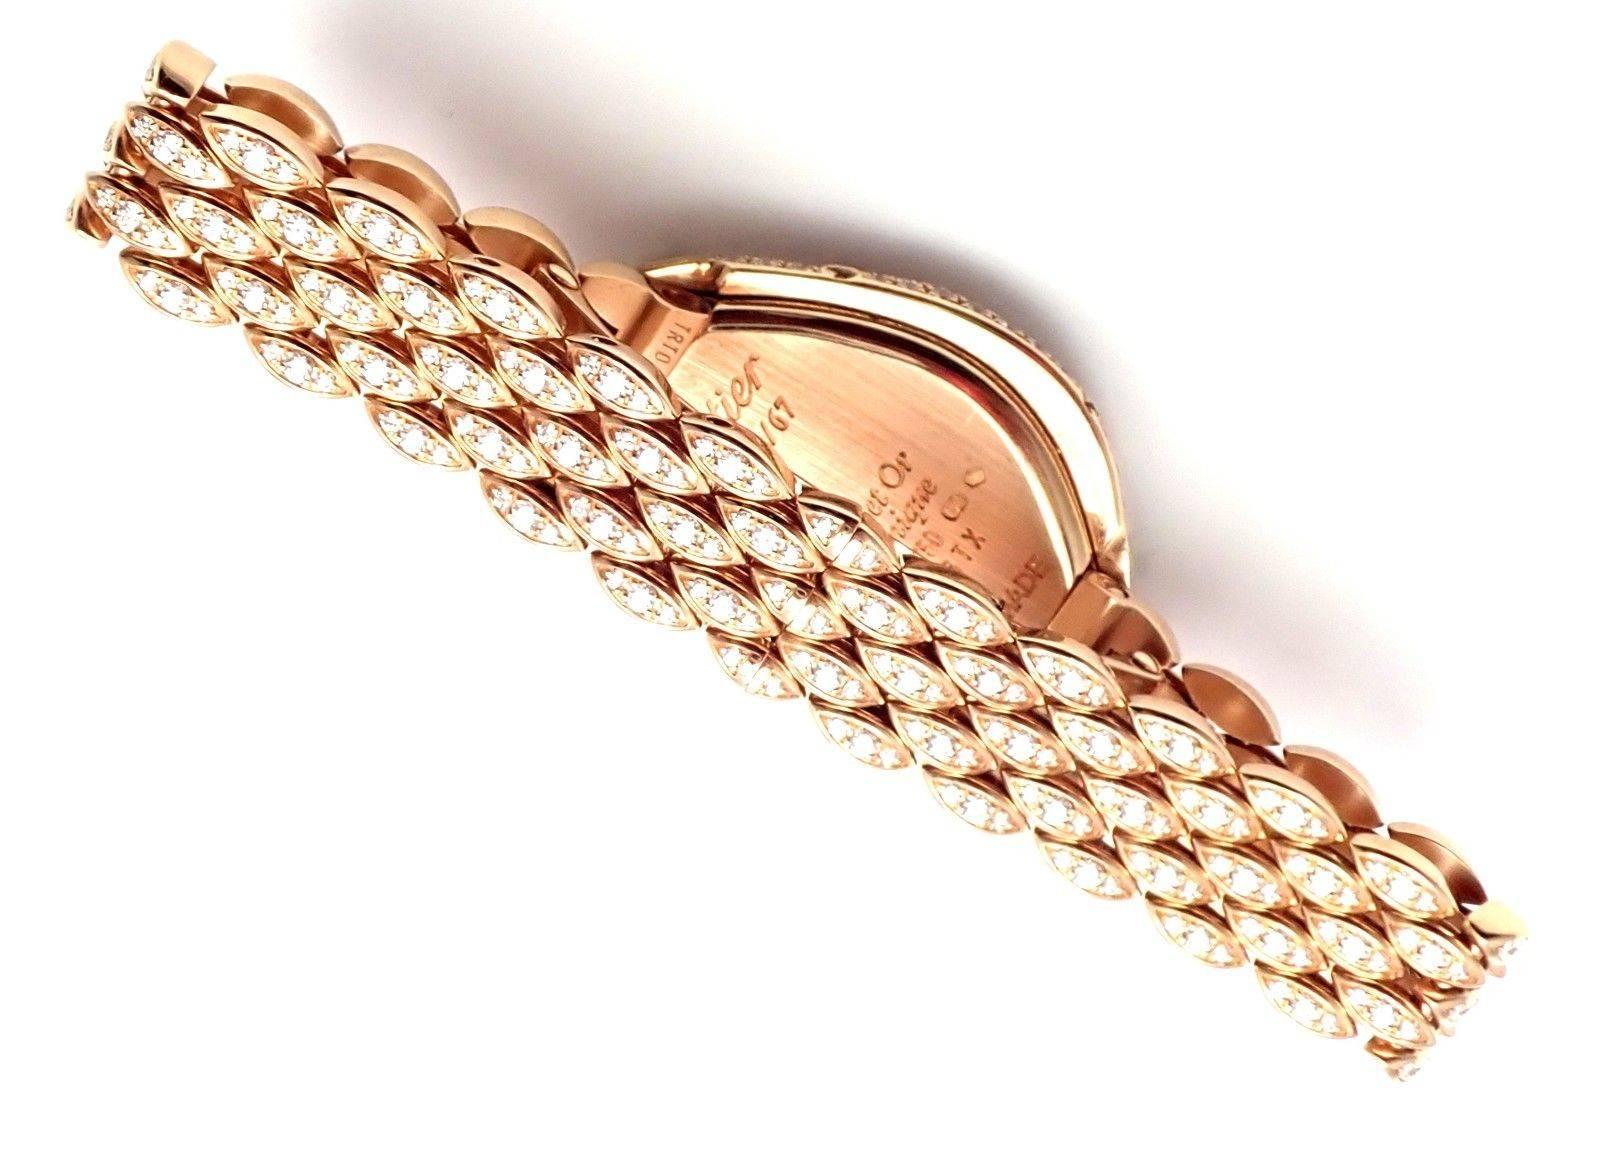 Montre-bracelet Crash Cartier en or rose et diamants édition limitée Ref HP100653 1